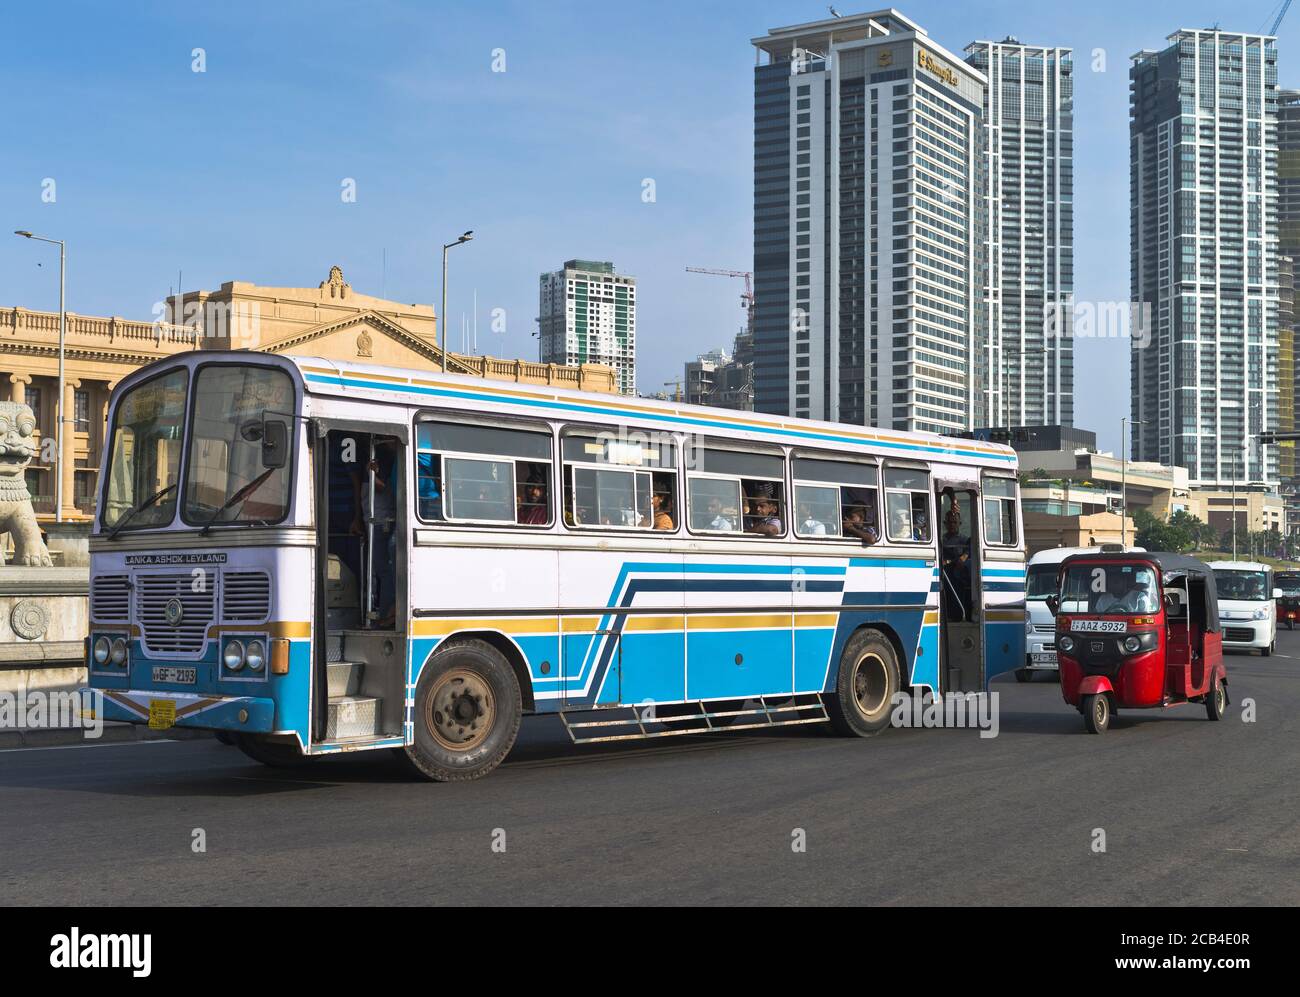 dh Galle Face roundabout COLOMBO CITY SRI LANKA Sri Lankan Ashok Leyland bus Tuk Tuk taxi traffic asian Stock Photo